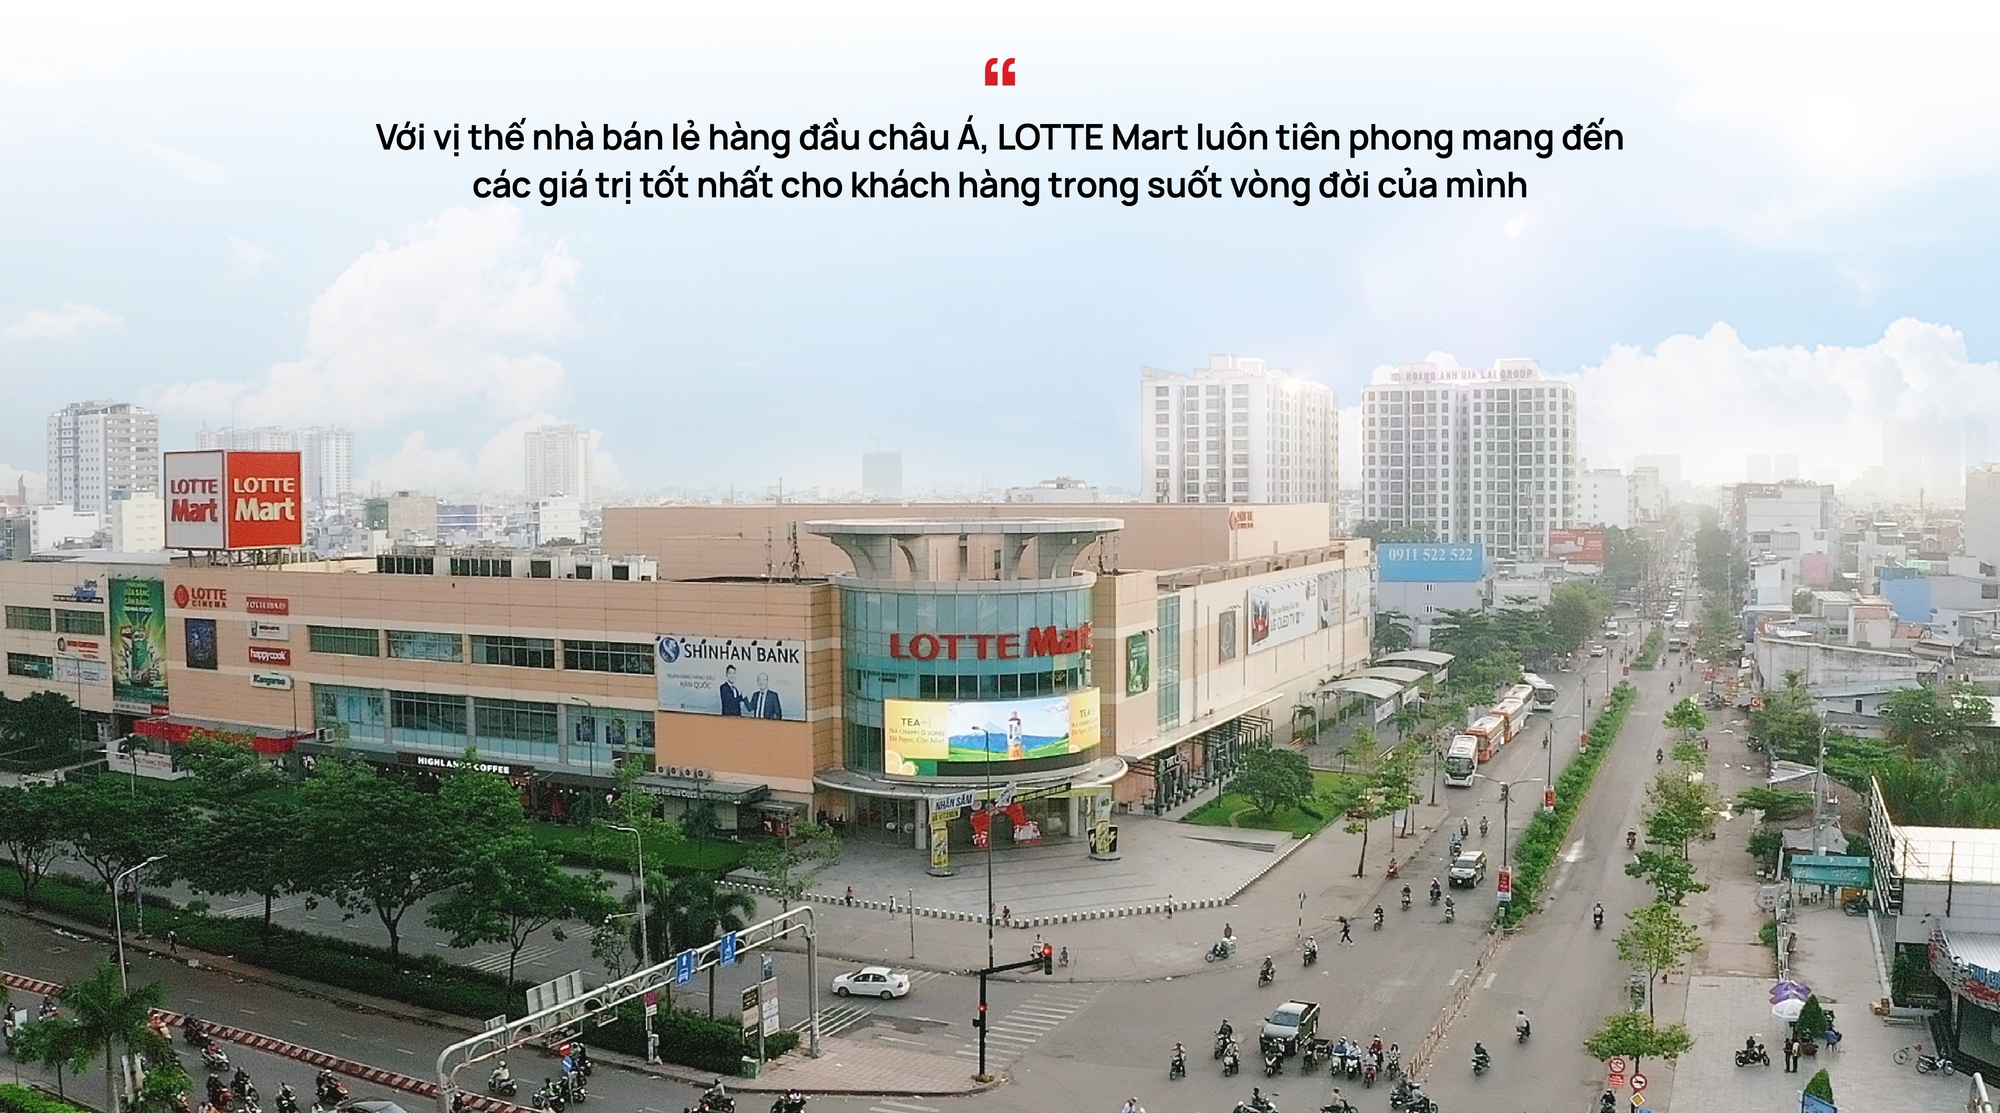 Hành trình 15 năm LOTTE Mart nâng tầm chất lượng cuộc sống người Việt trong dòng chảy xã hội hiện đại - Ảnh 3.